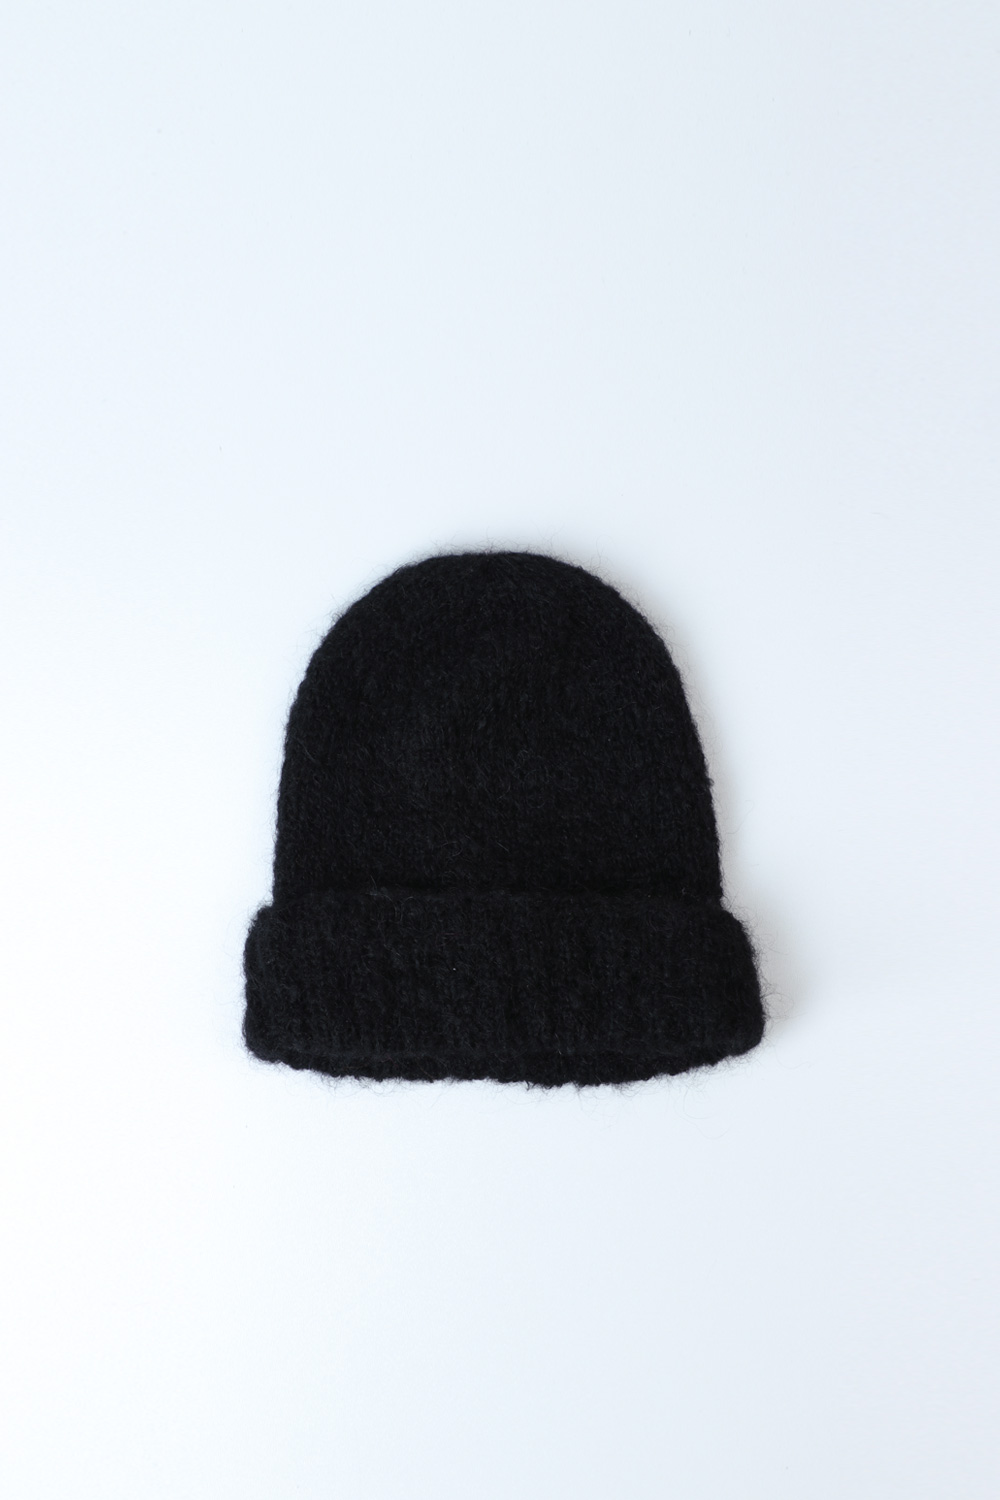 One Bunting Away: Het Zwarte Schaap - Knit hats store in Amsterdam